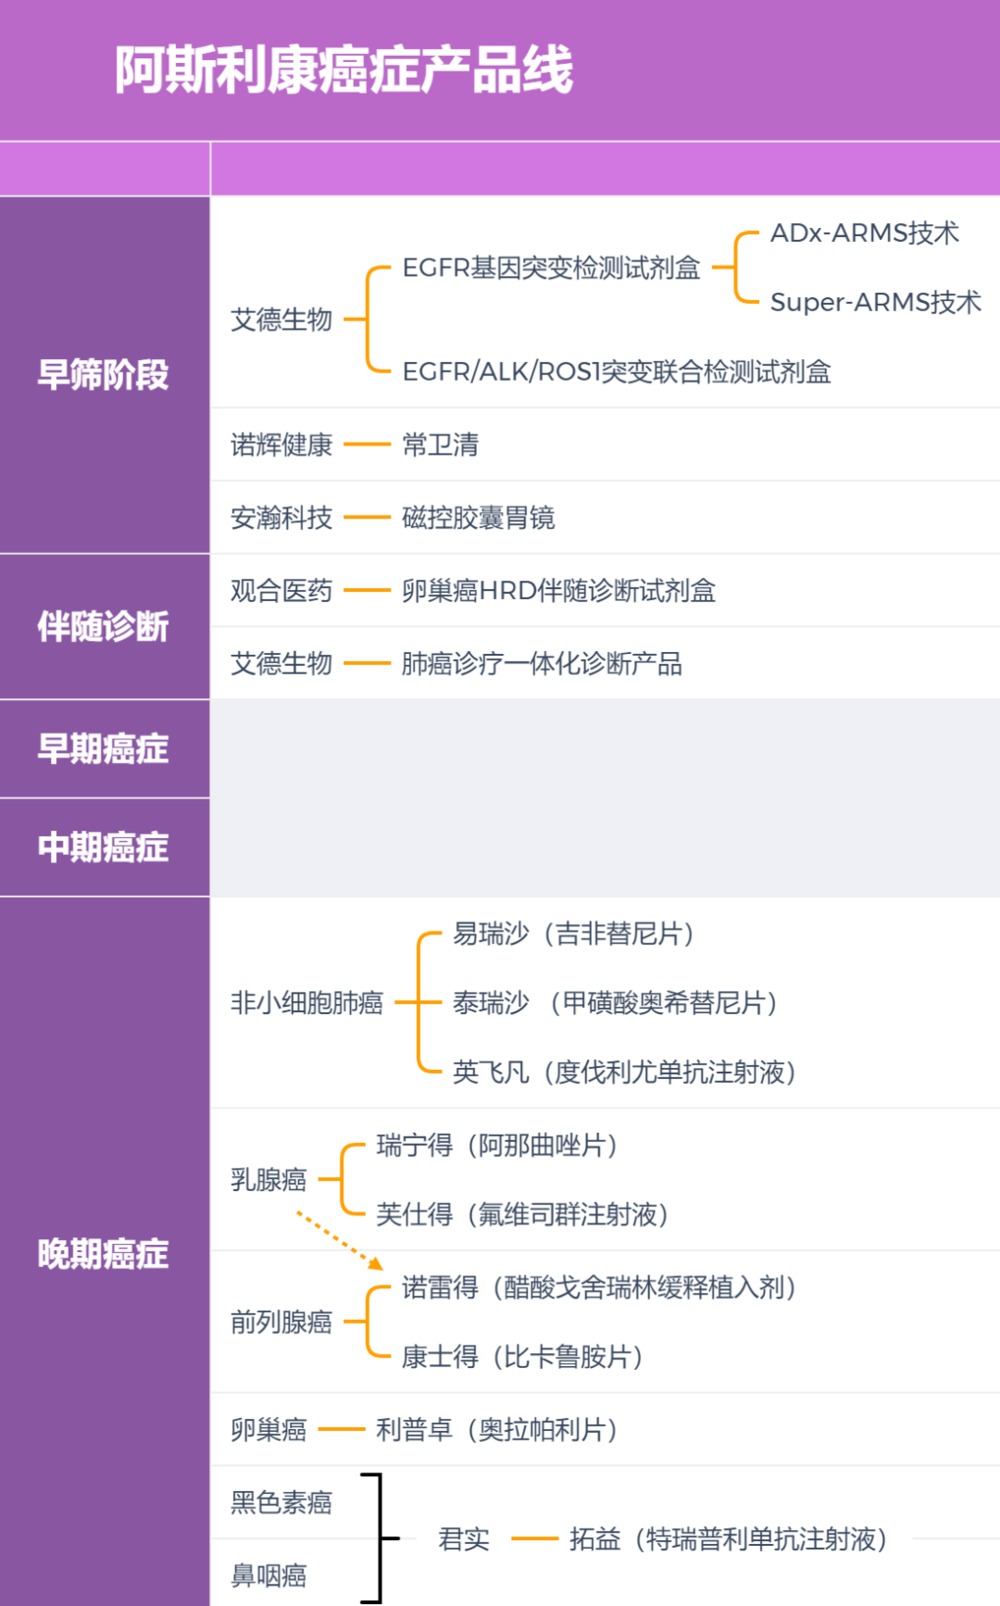 阿斯利康中国的癌症类产品线。制图：放大灯团队<br>